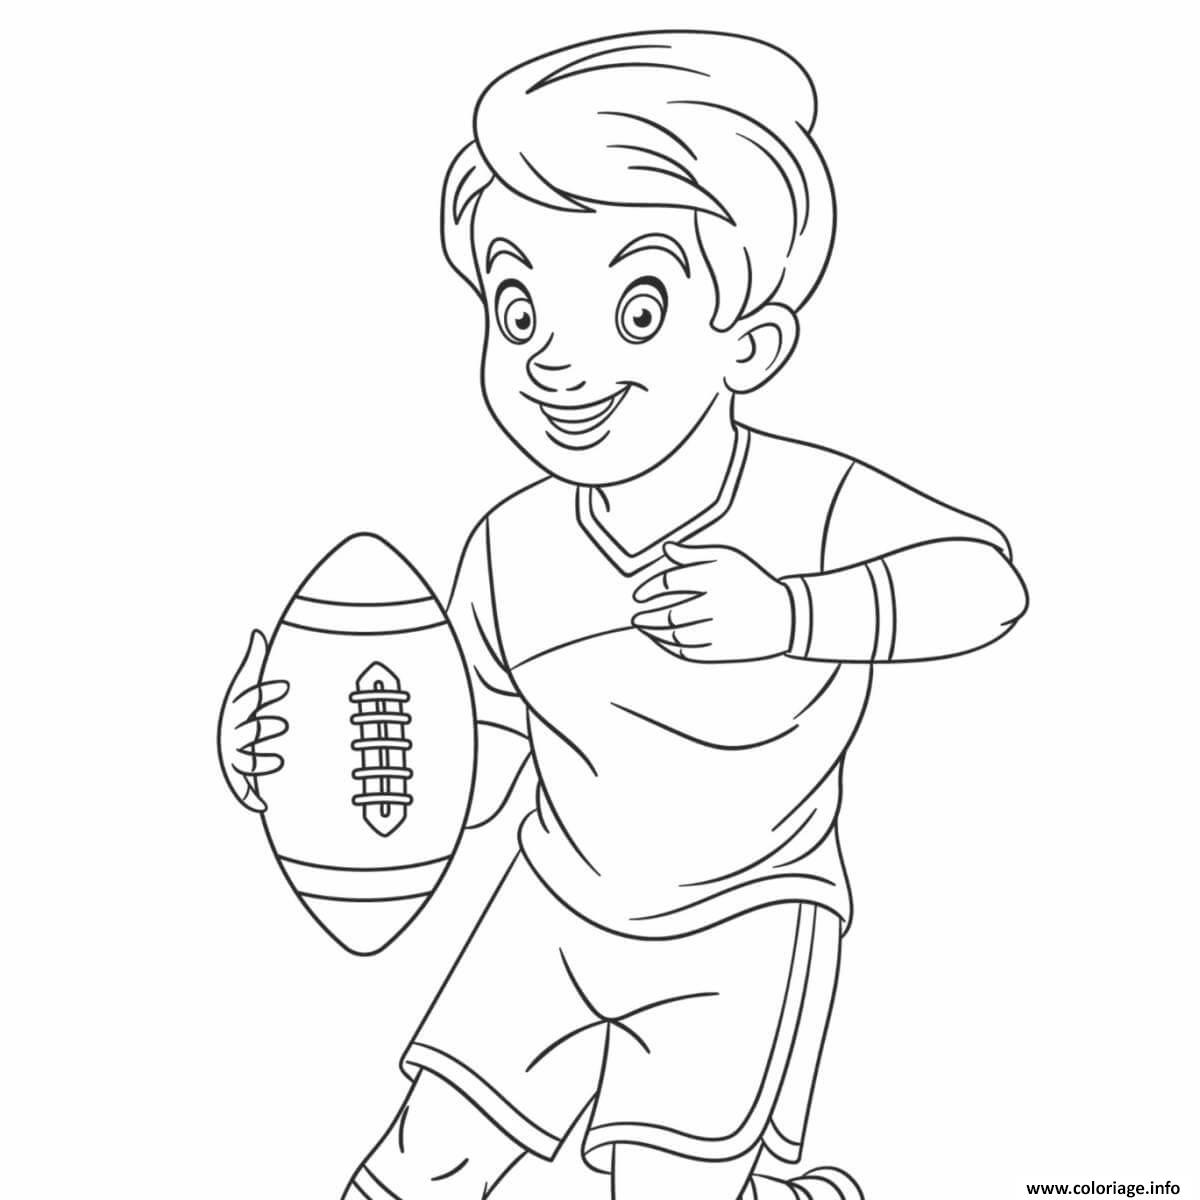 Dessin rugby enfant avec un balon de rugby Coloriage Gratuit à Imprimer